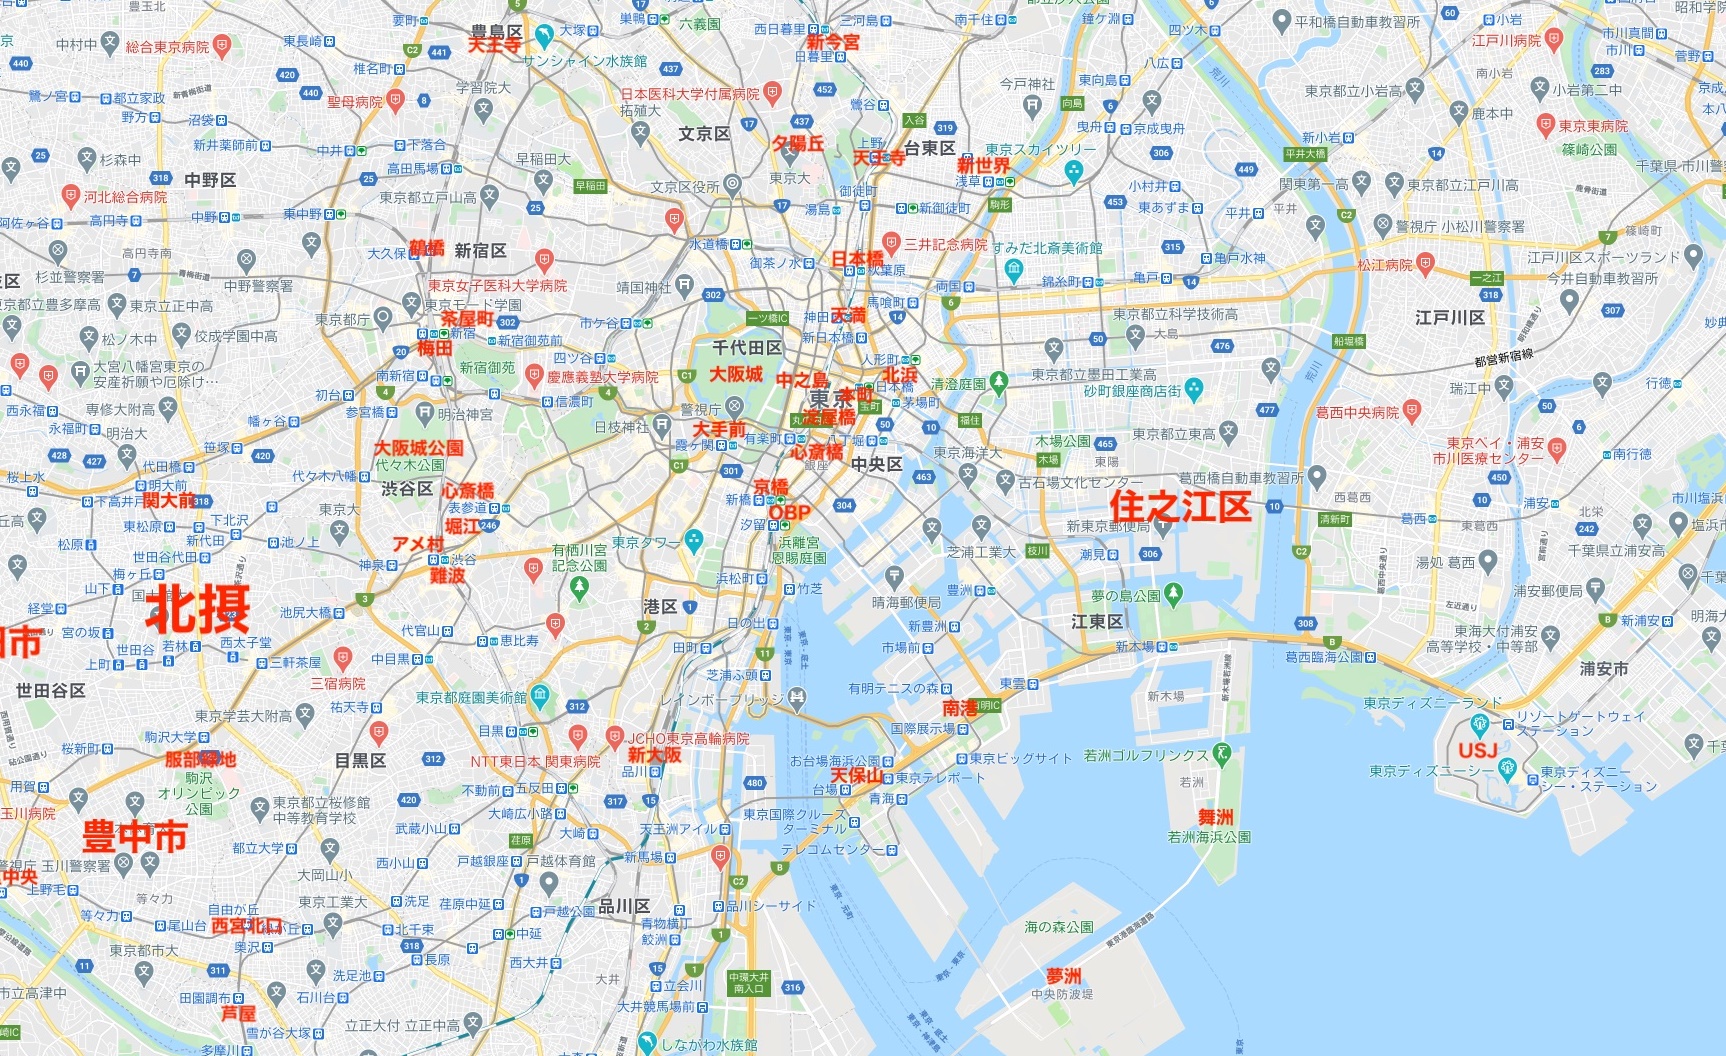 東京に大阪の街を当てはめる！「東京の街を大阪でたとえたら」MAPが話題